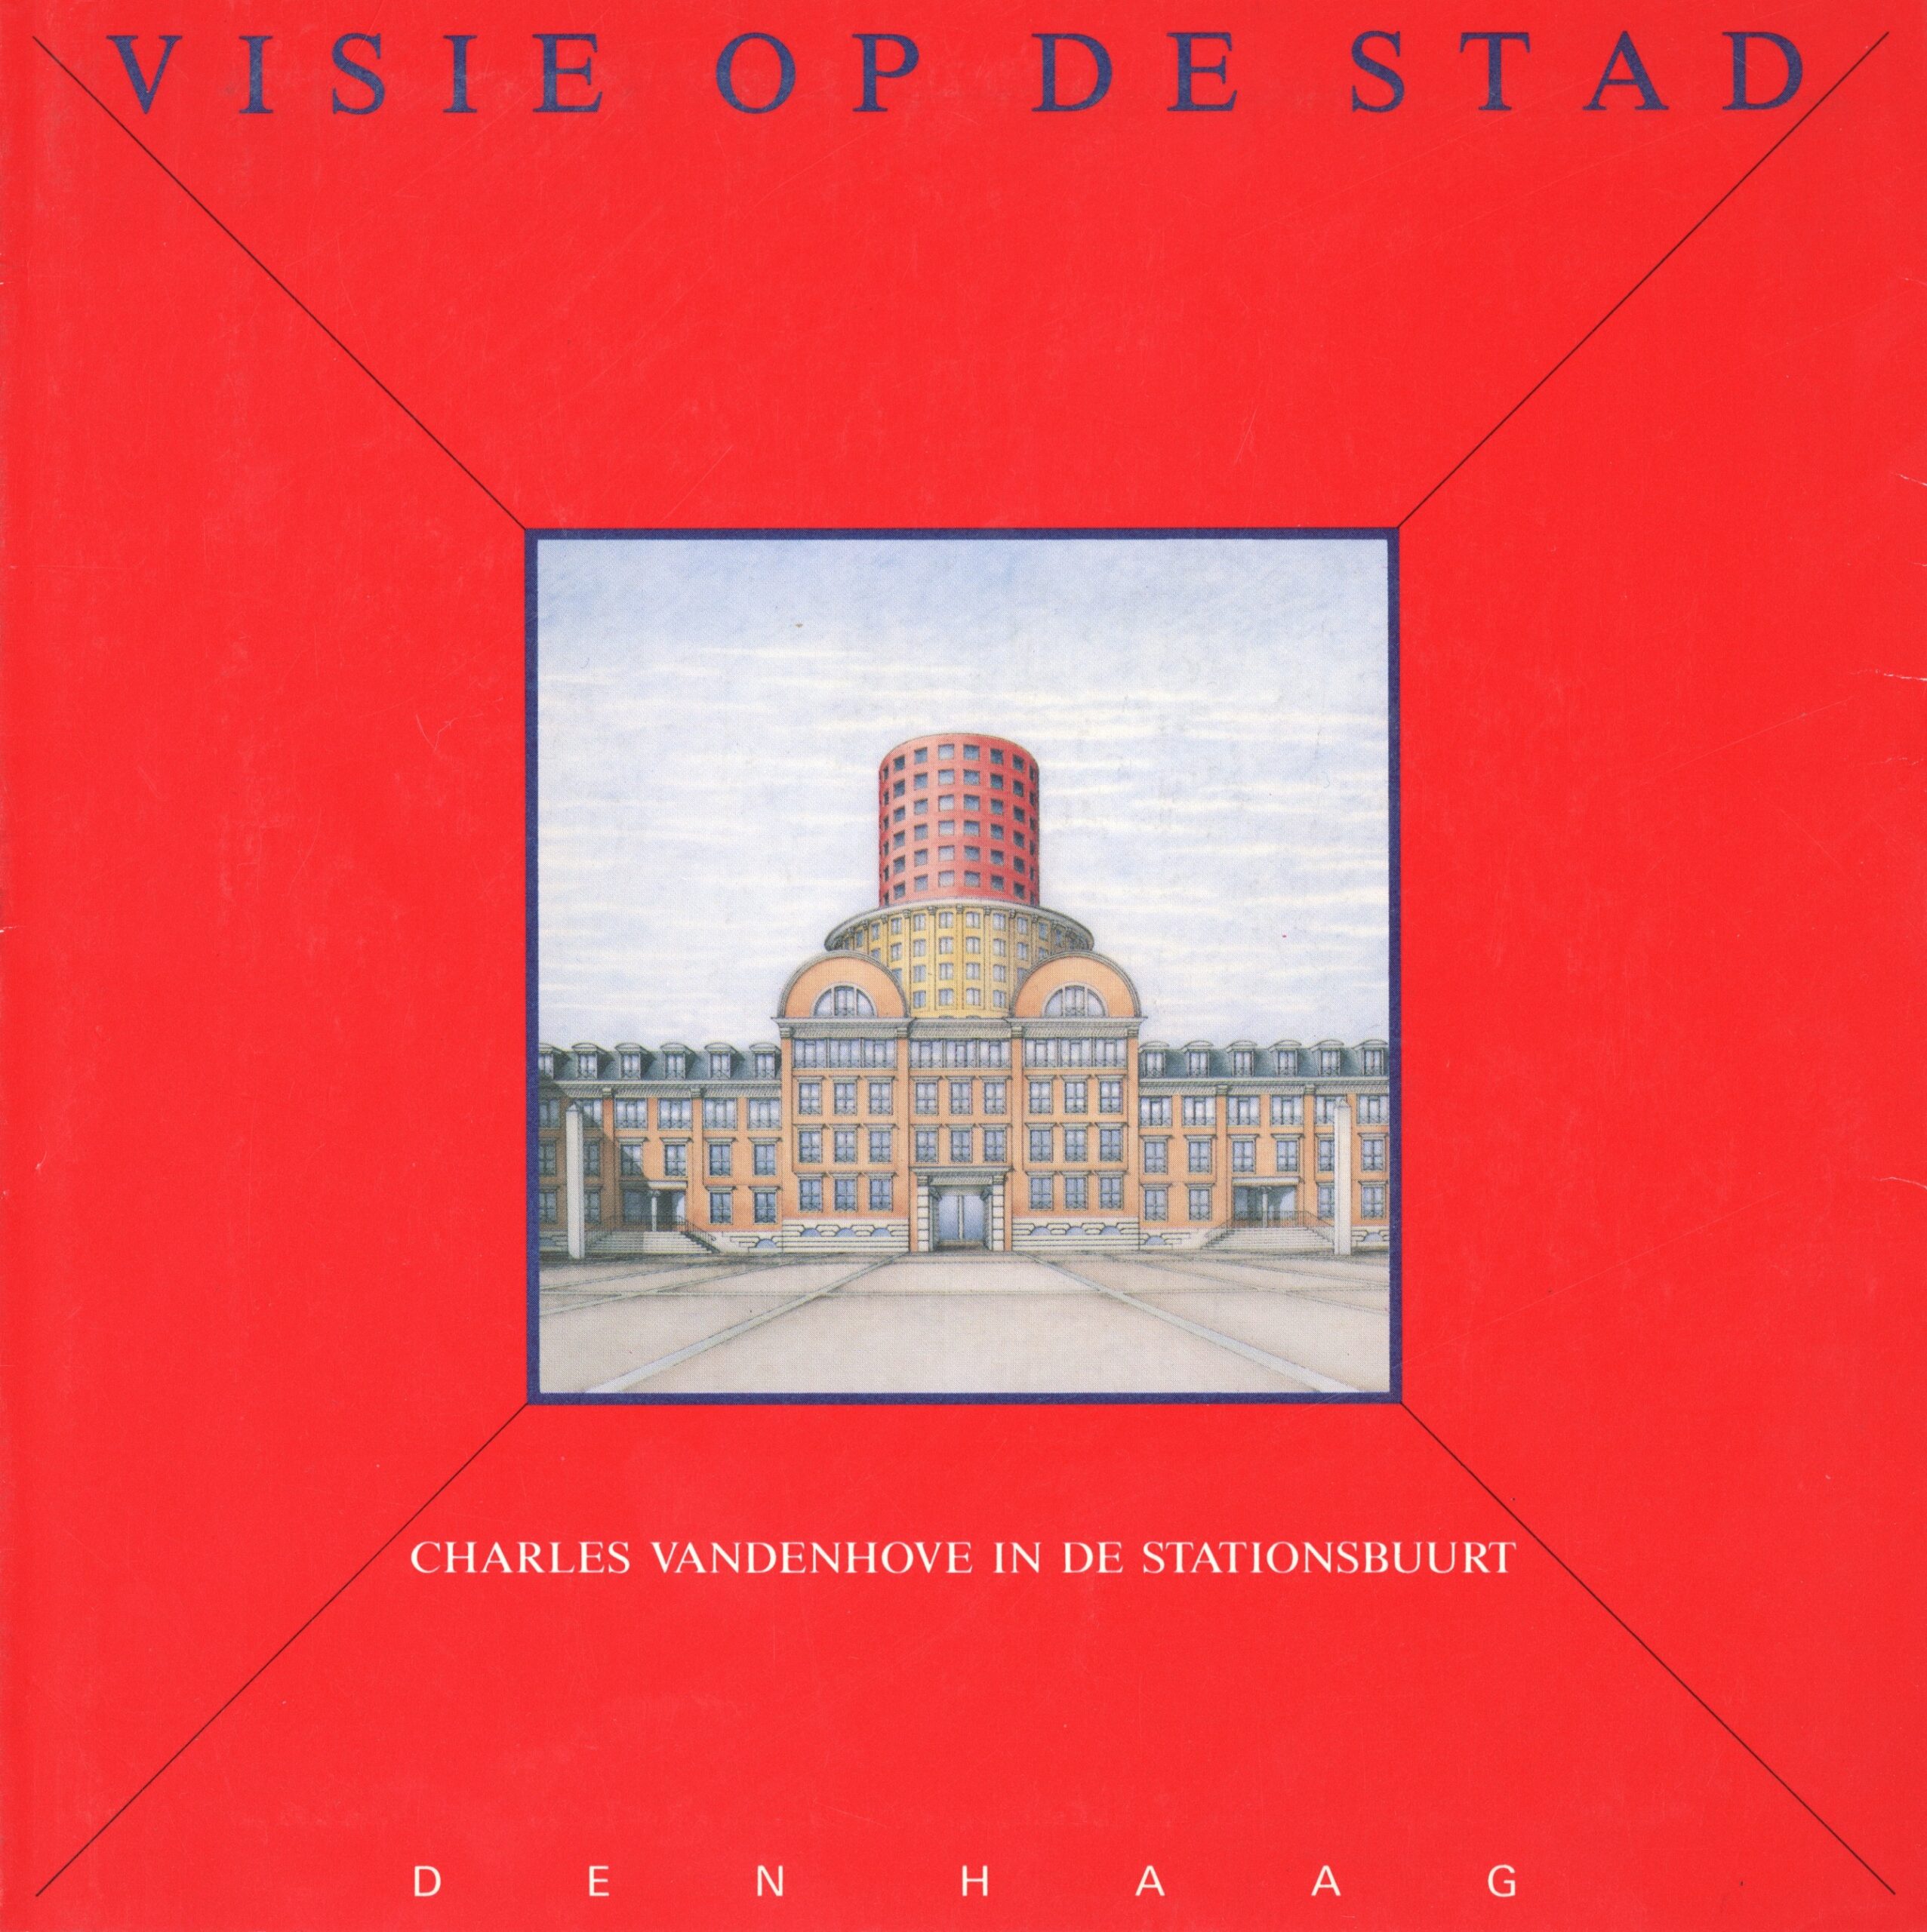 Visie op de stad – Charles Vandenhove in de Stationsbuurt – 6 Haagse bouwprojecten